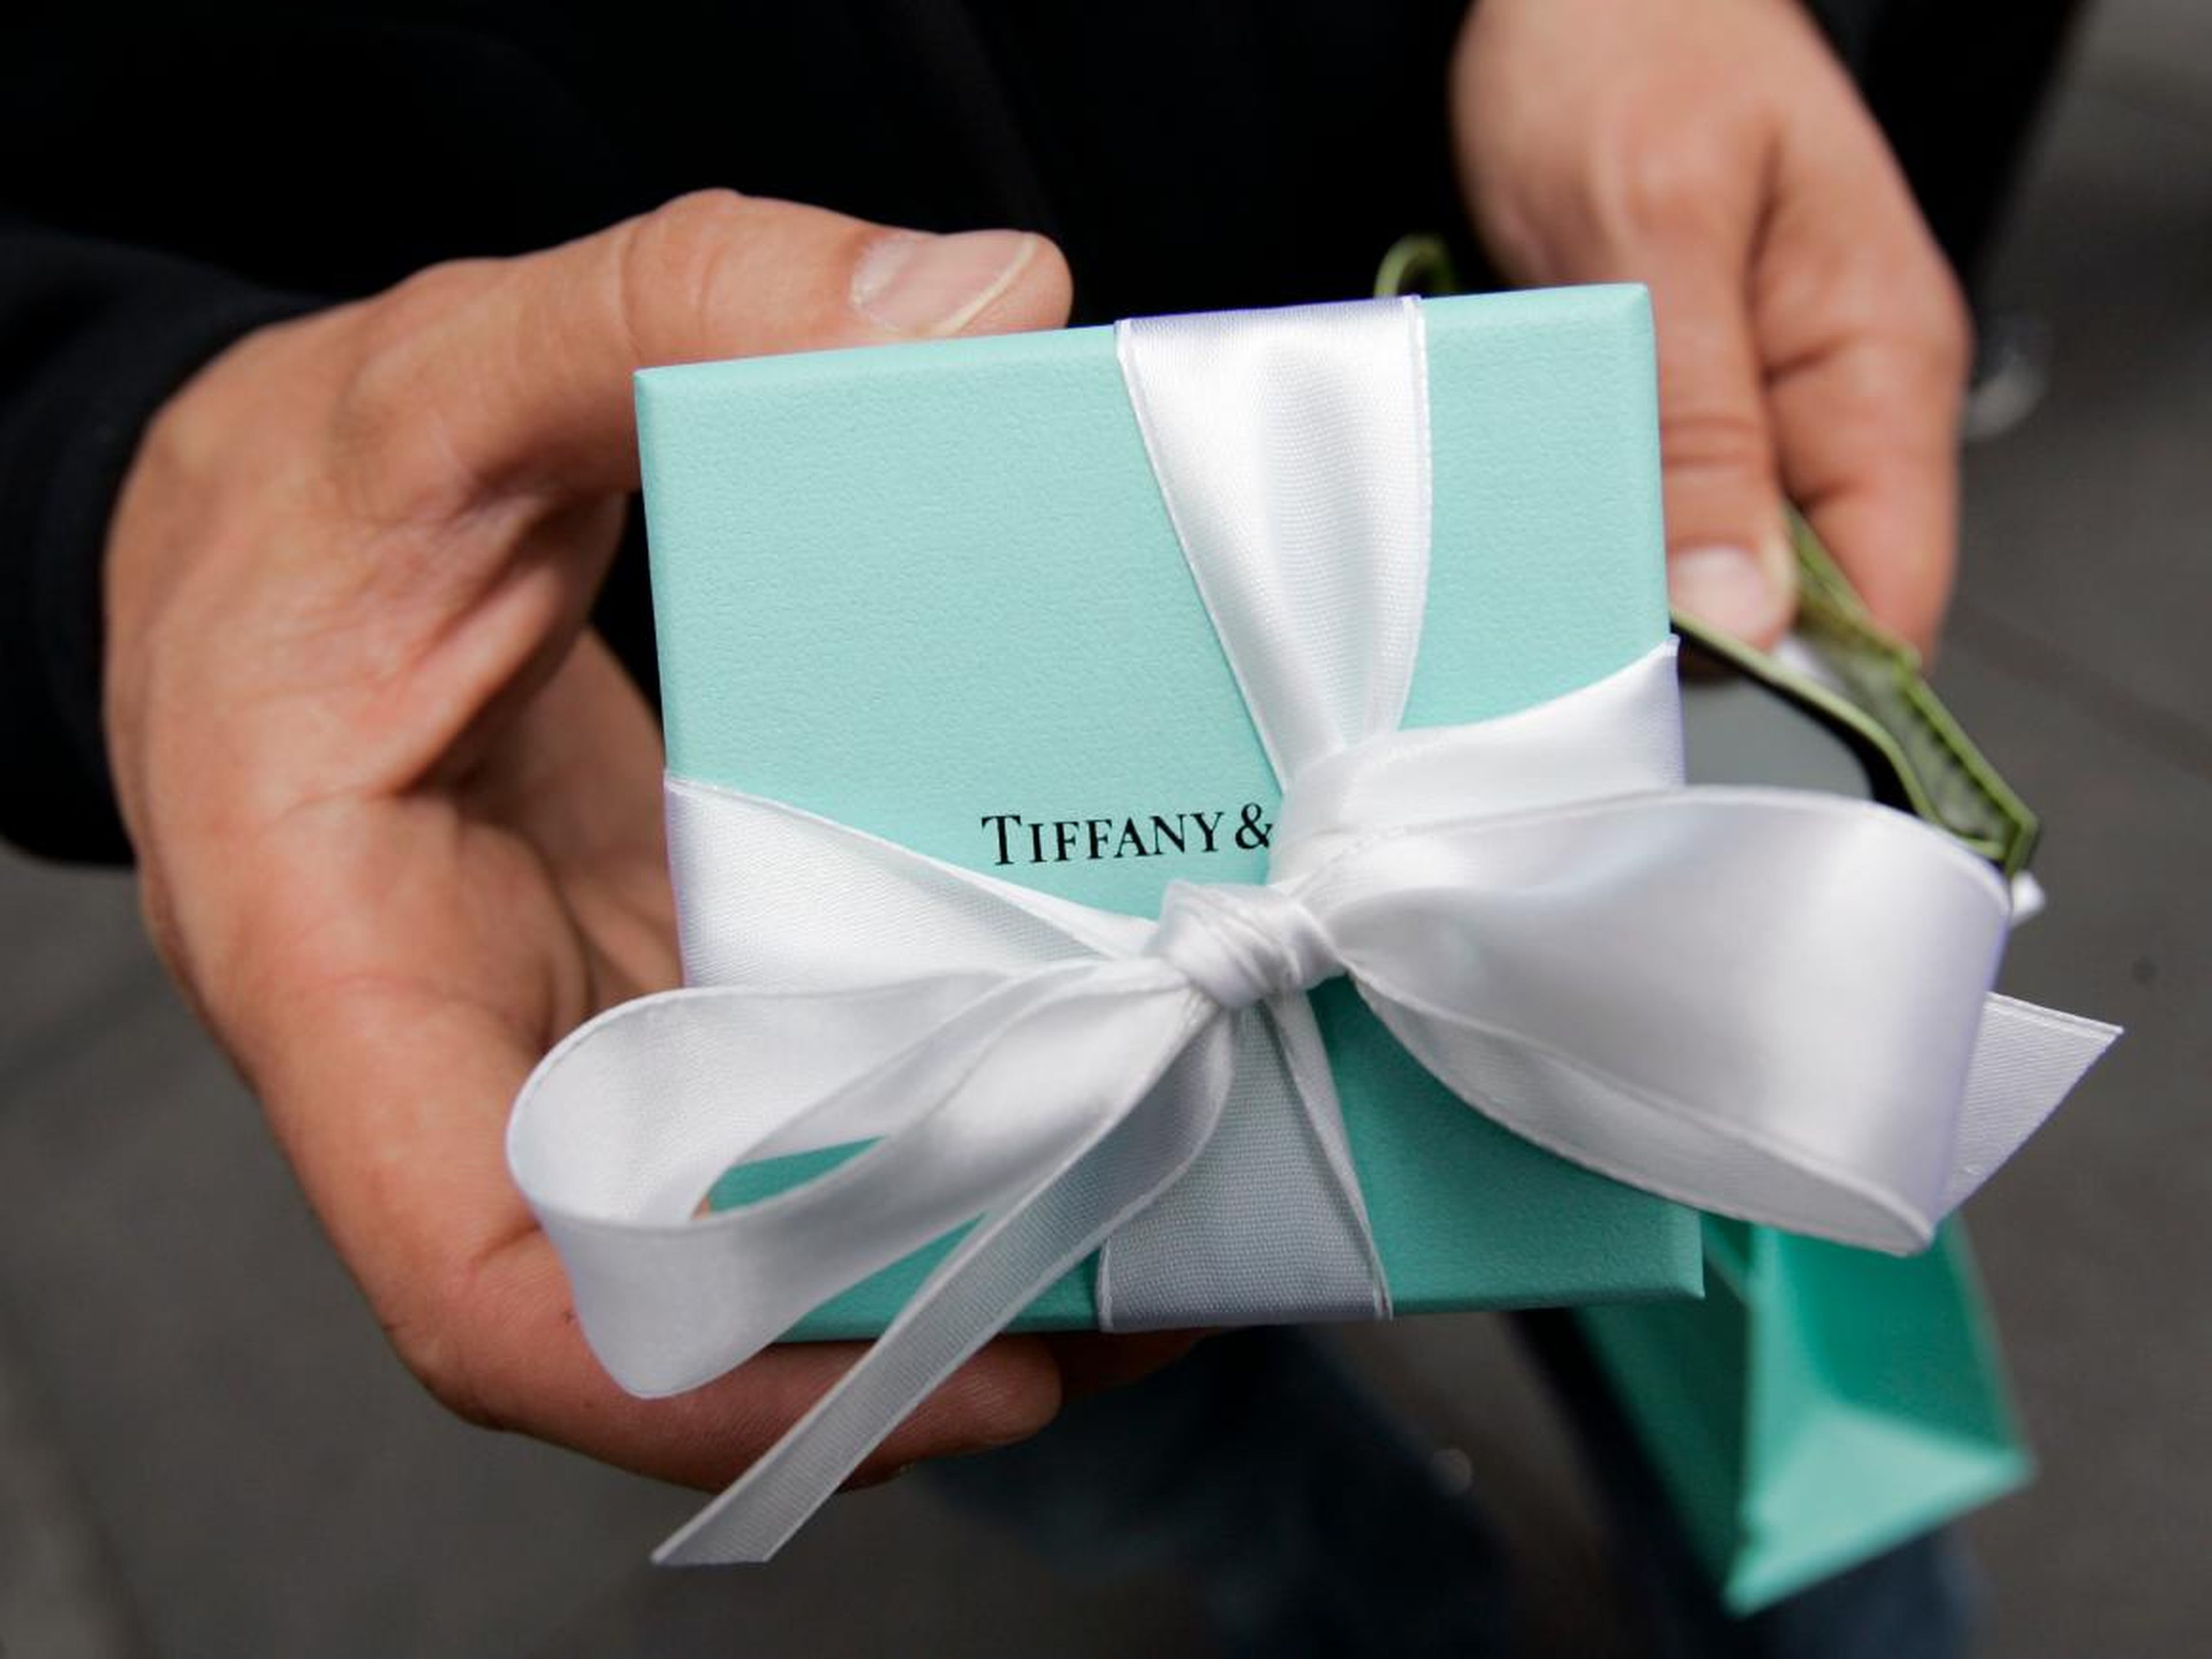 7. Tiffany & Co.